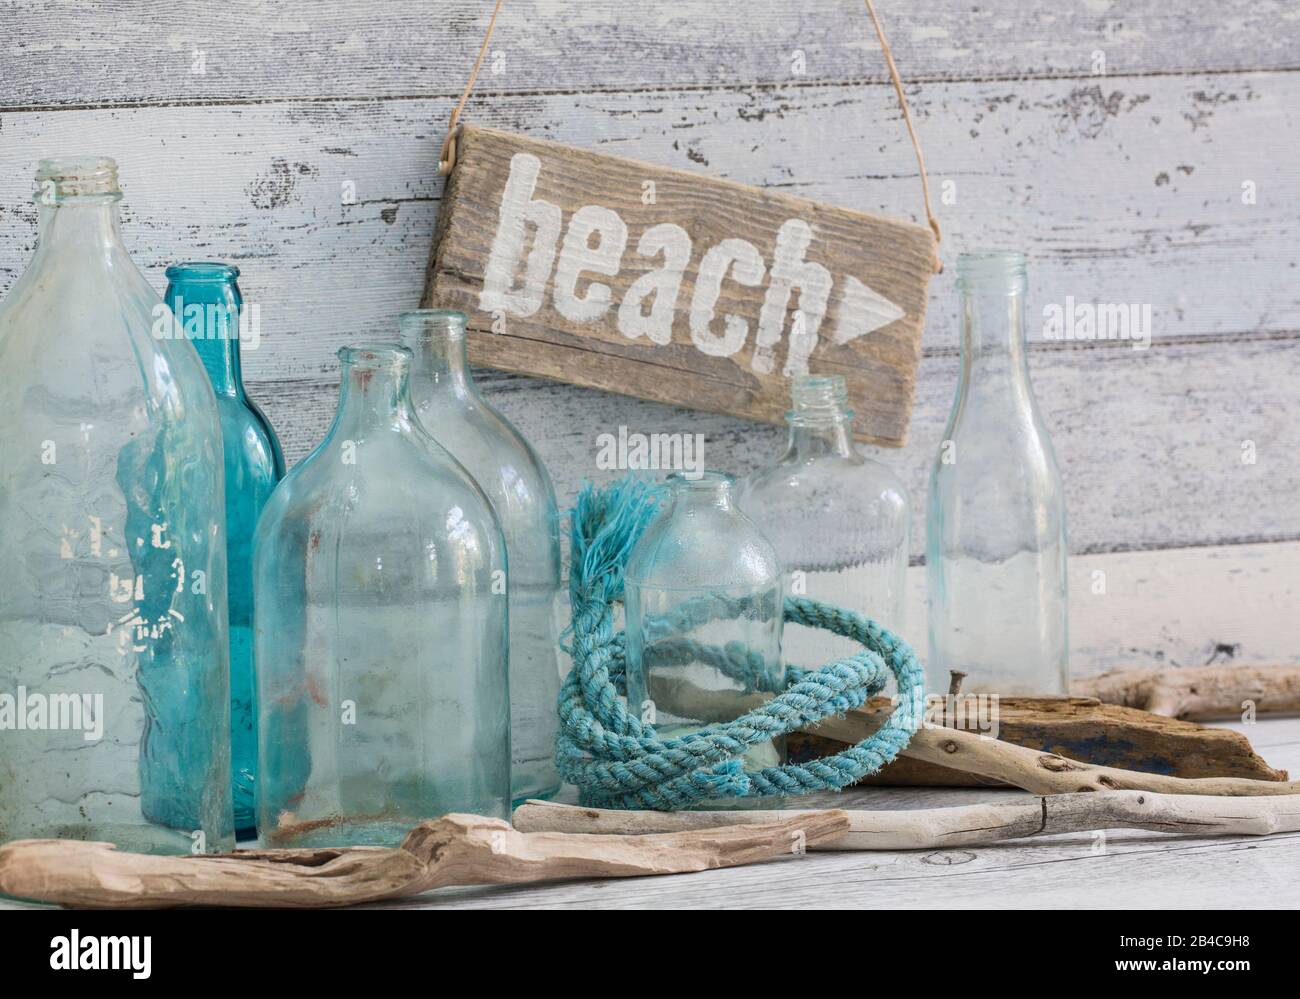 Ancora vita nautica con segno di spiaggia in legno, corda e vecchie bottiglie blu Foto Stock